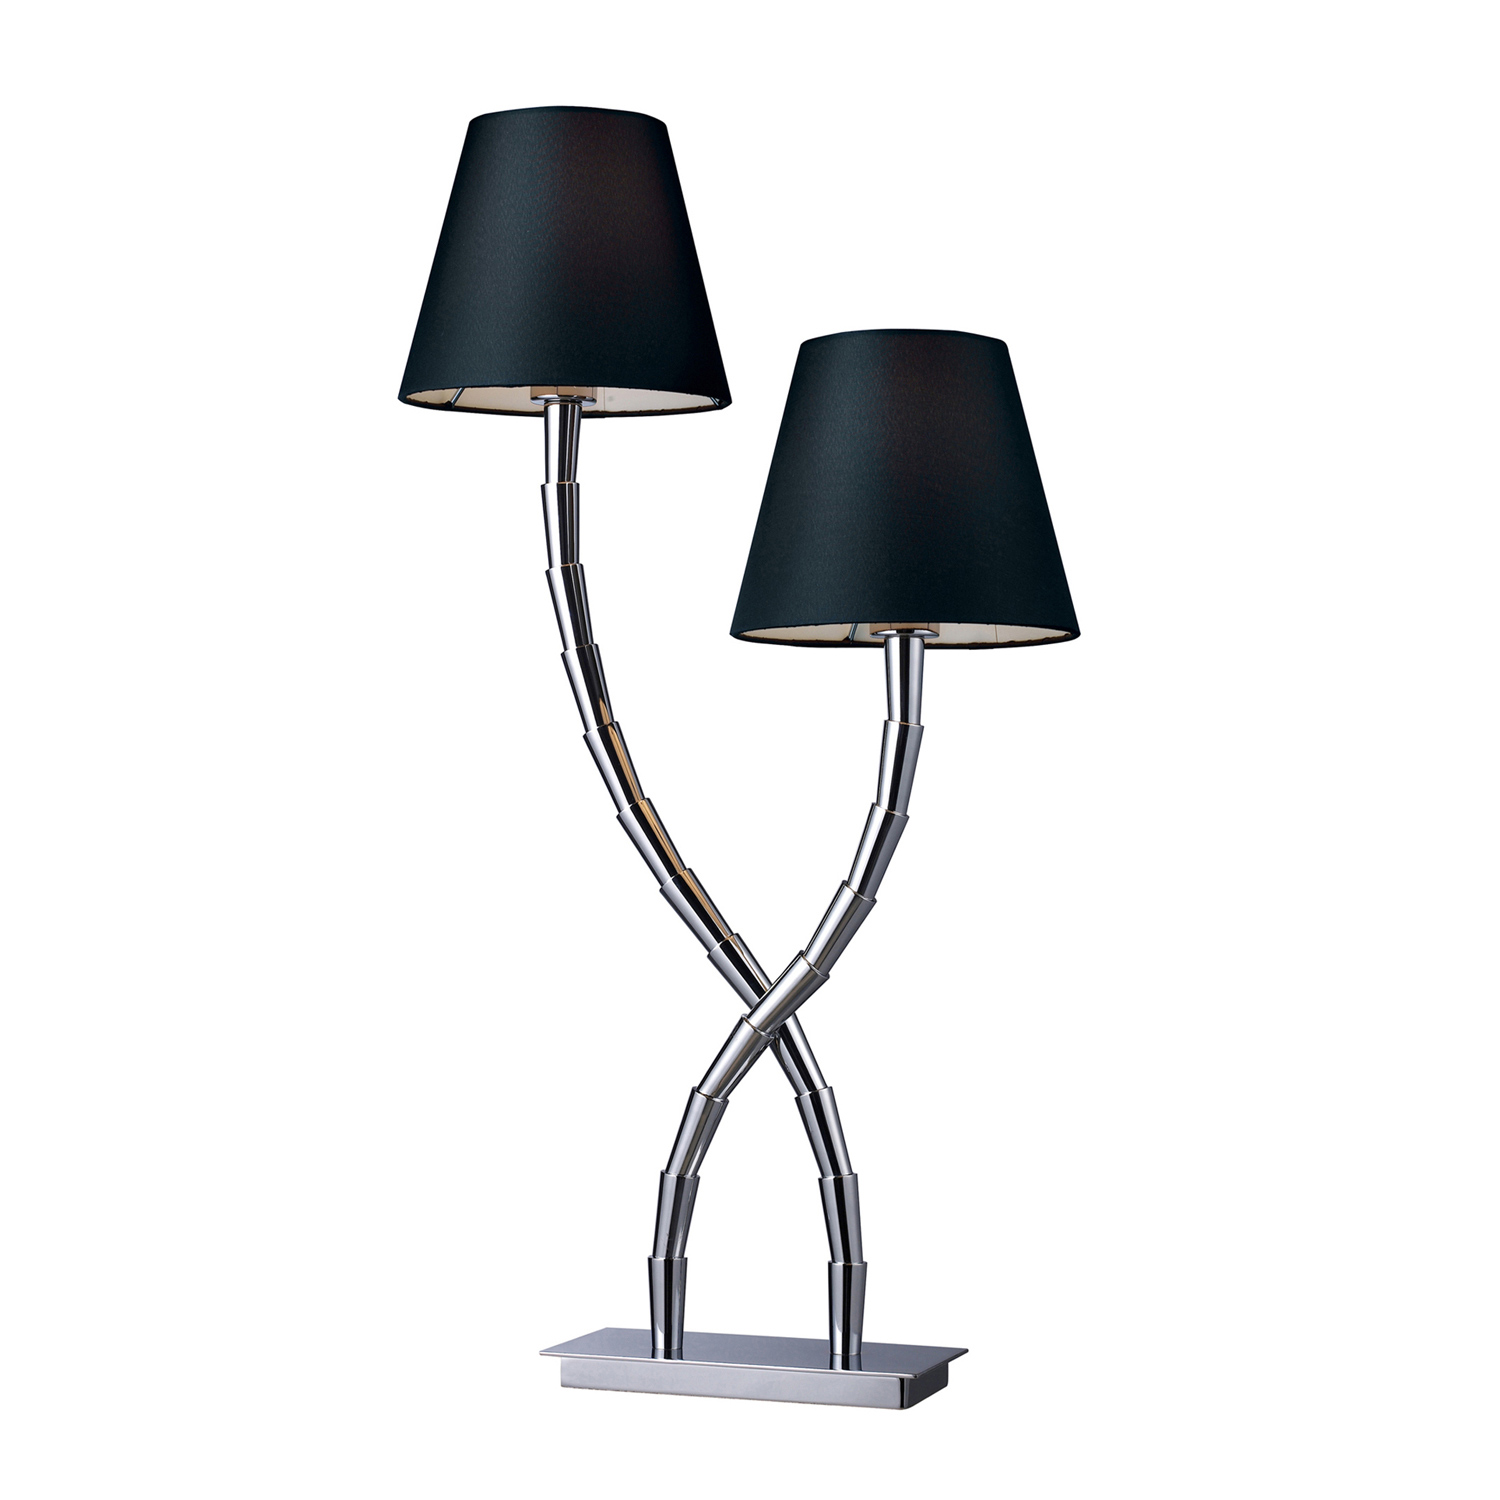 Elk Lighting D1473 Park Avenue Table Lamp - Chrome